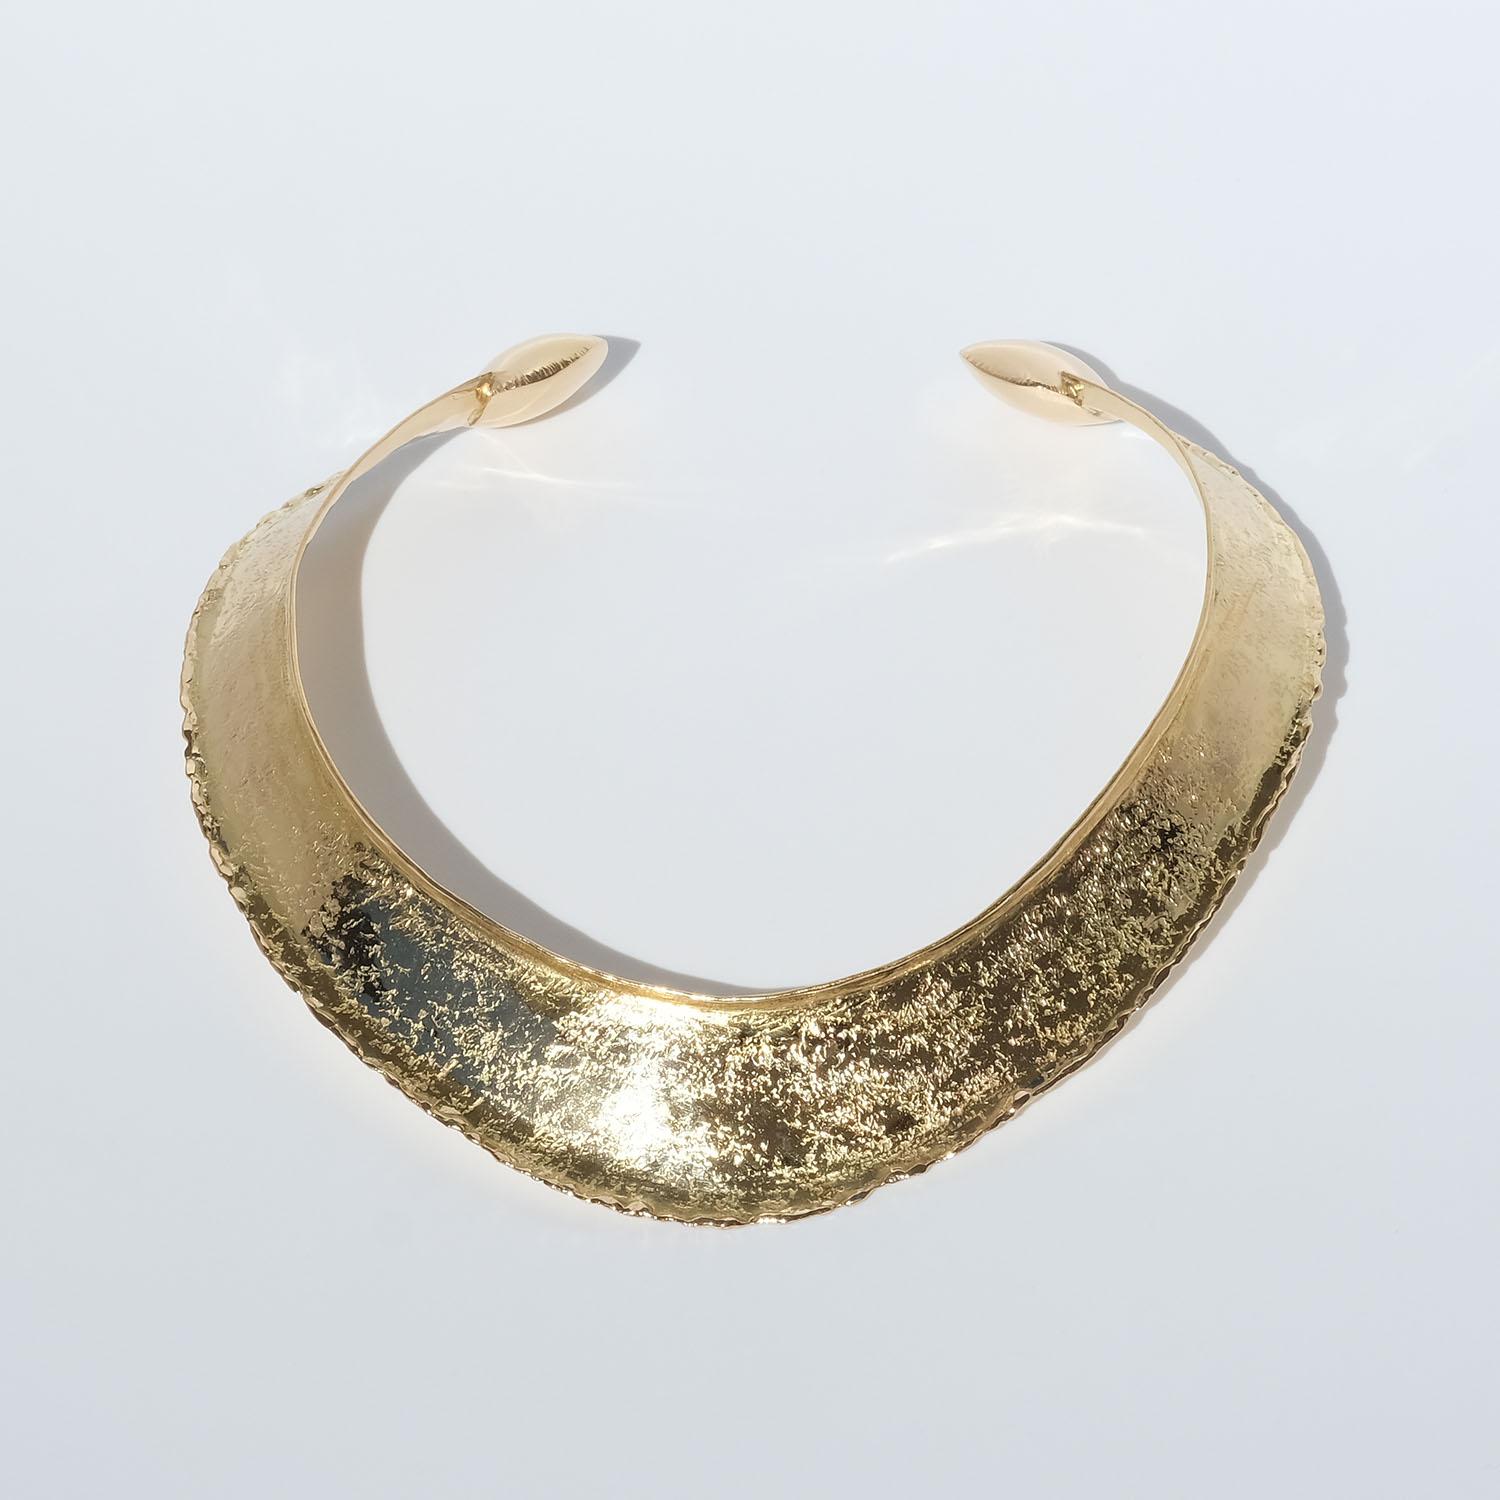 Cet anneau de cou en or 18 carats présente une surface brillante et texturée. La forme de l'anneau de cou peut être décrite comme semi-ovale avec un front accentué. Les bras de l'anneau sont équipés de coussins dorés de forme carrée à leurs